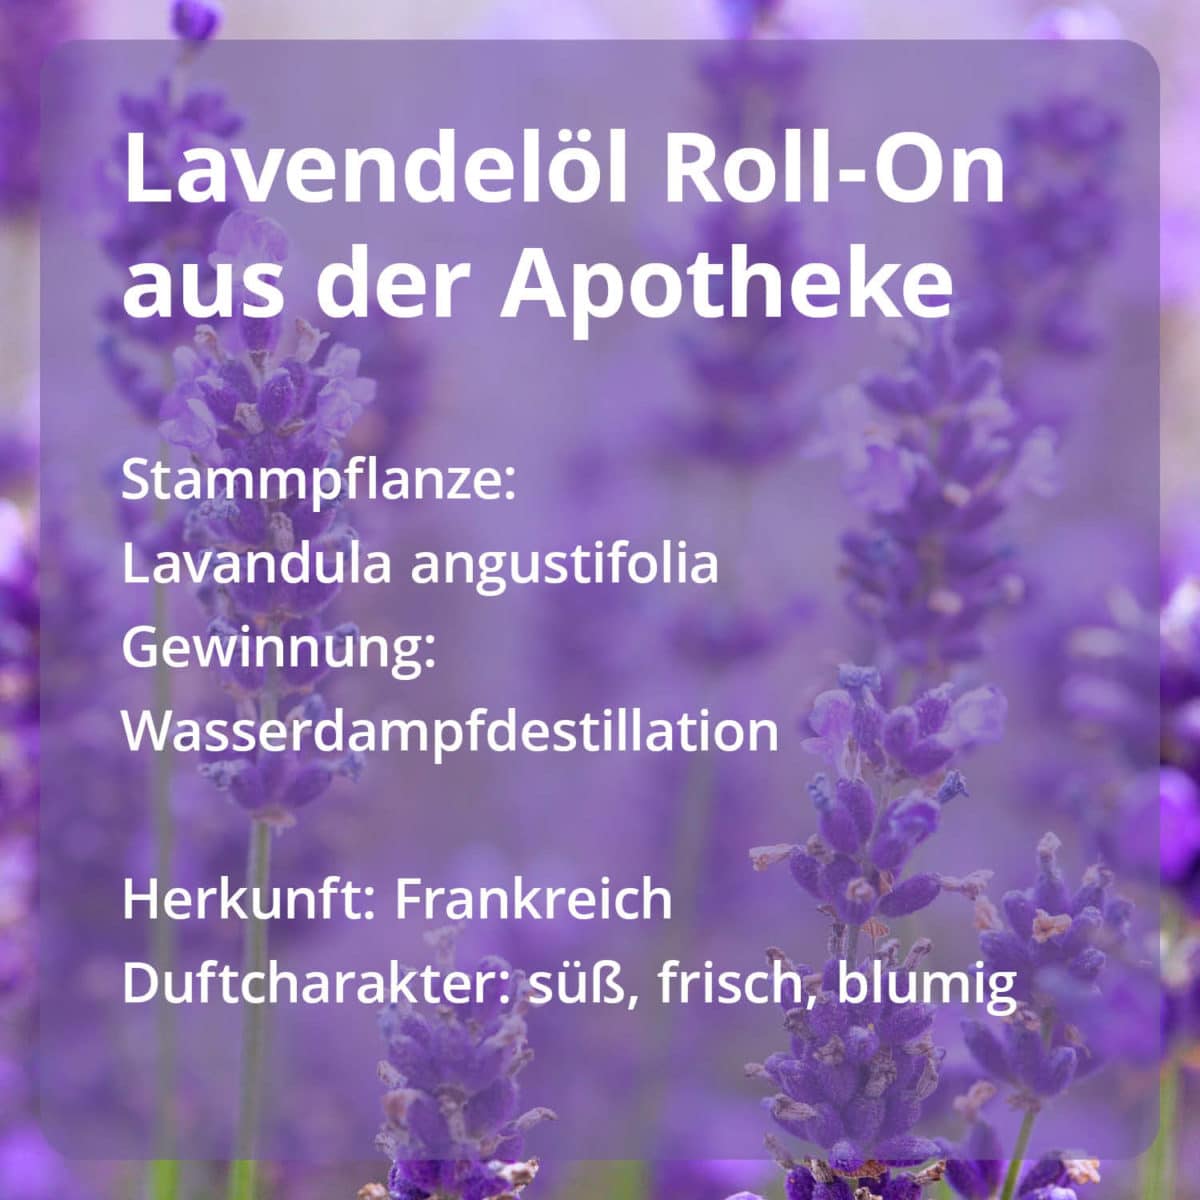 Roll-on Set Lavendel & Pfefferminz Produktbilder3